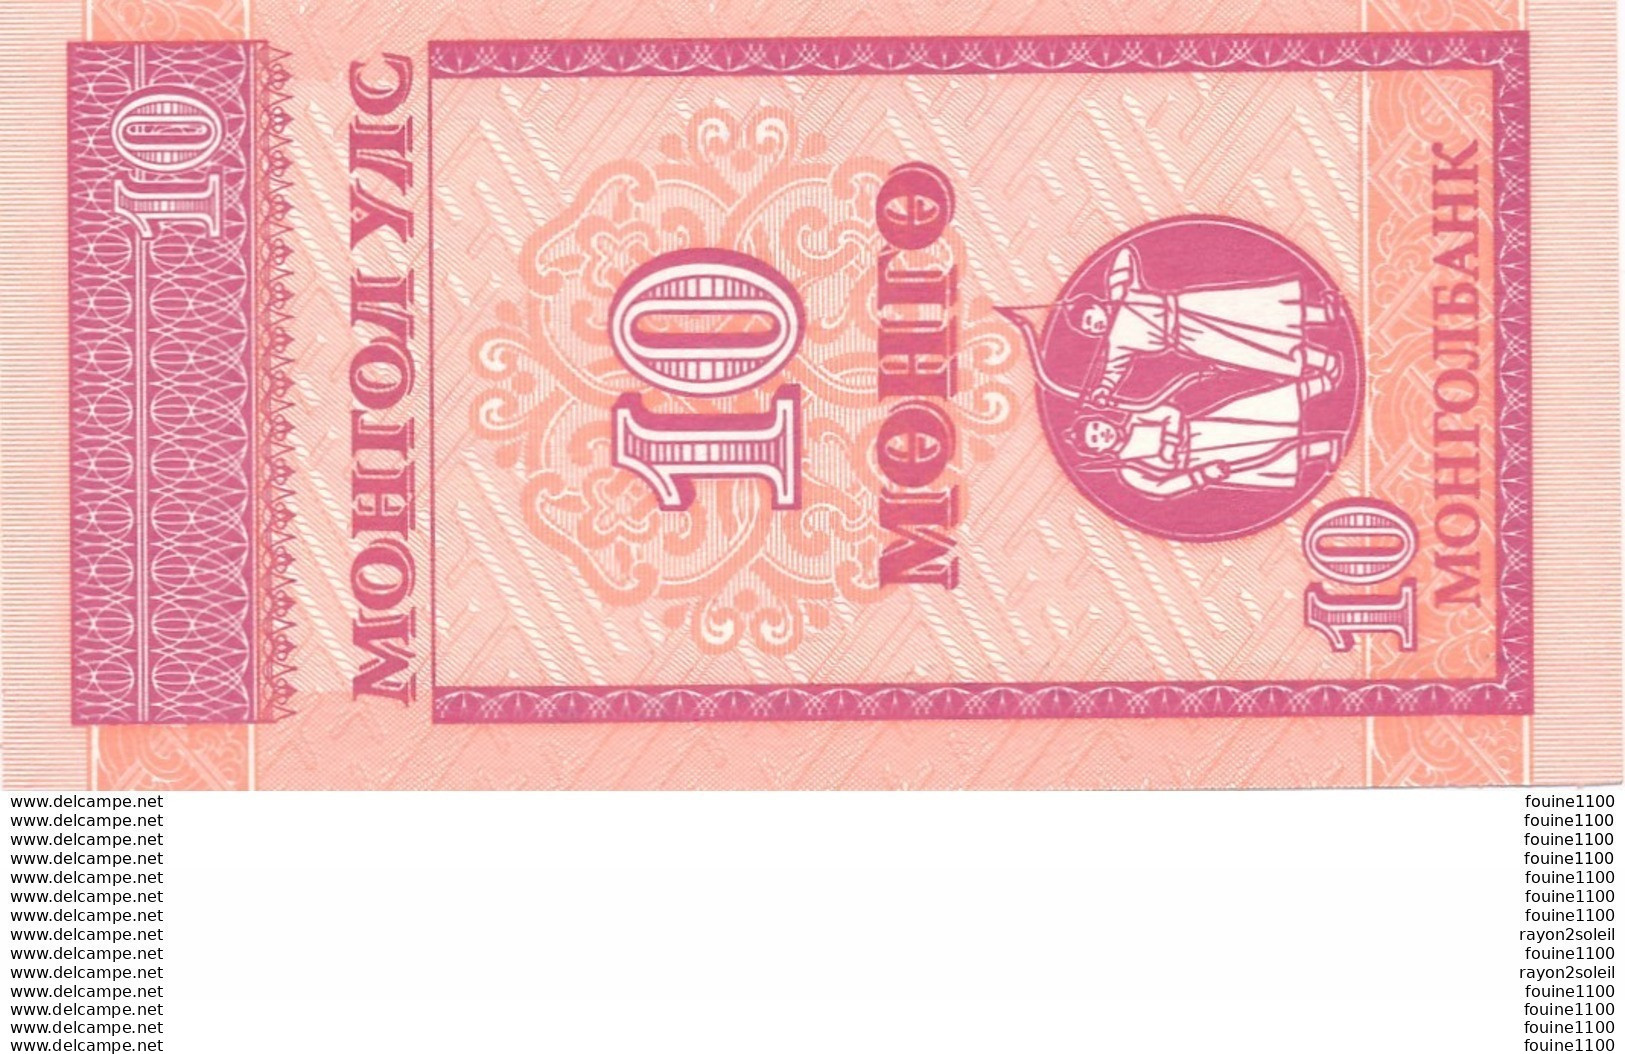 Billet  De Banque Mongolie 10 Mohro - Mongolei